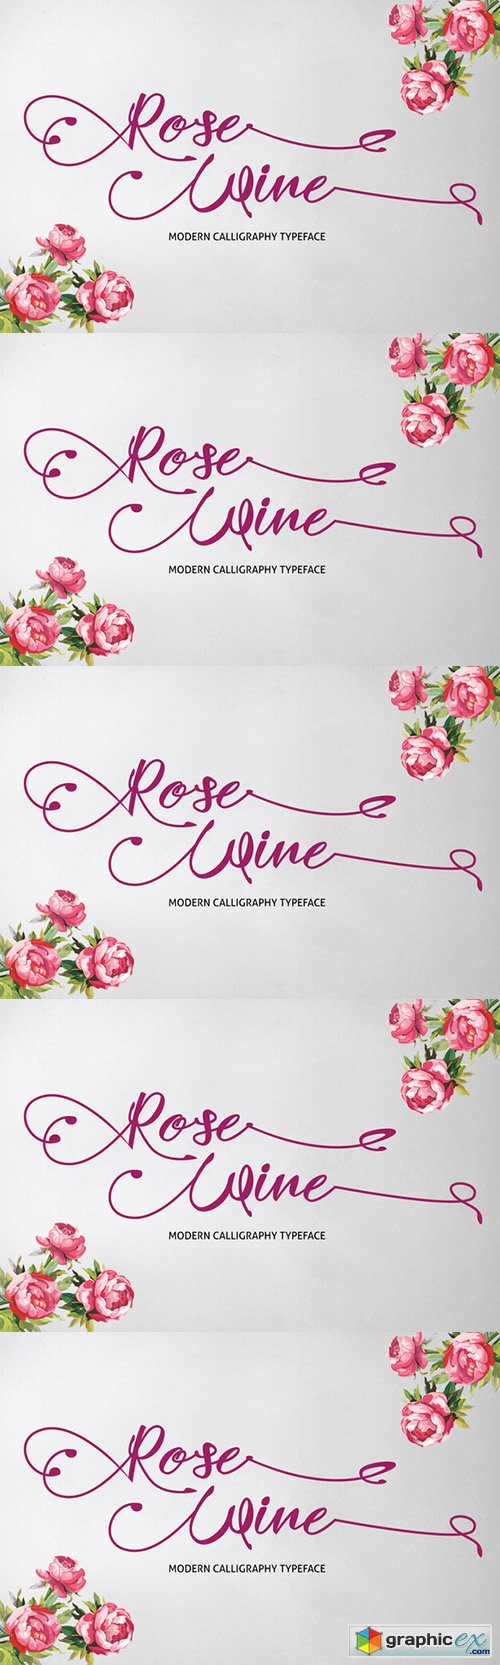 Rose Wine Typeface